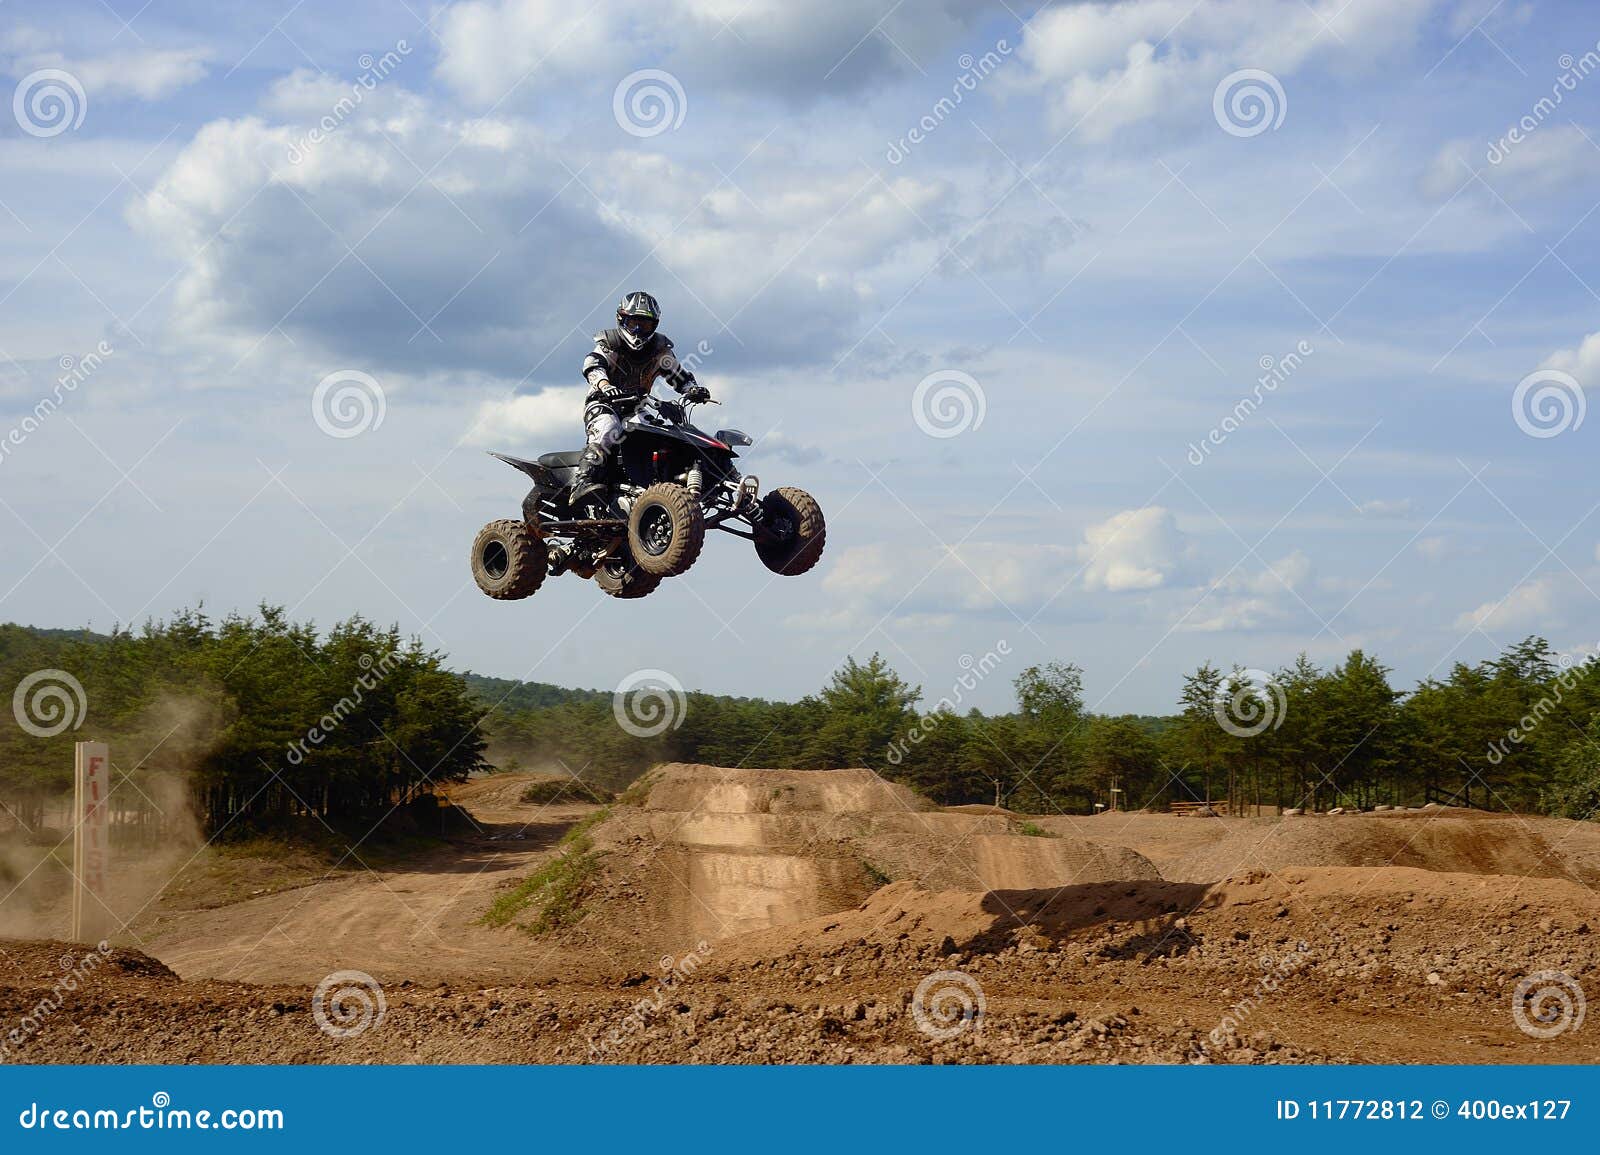 atv rider 2 jumping